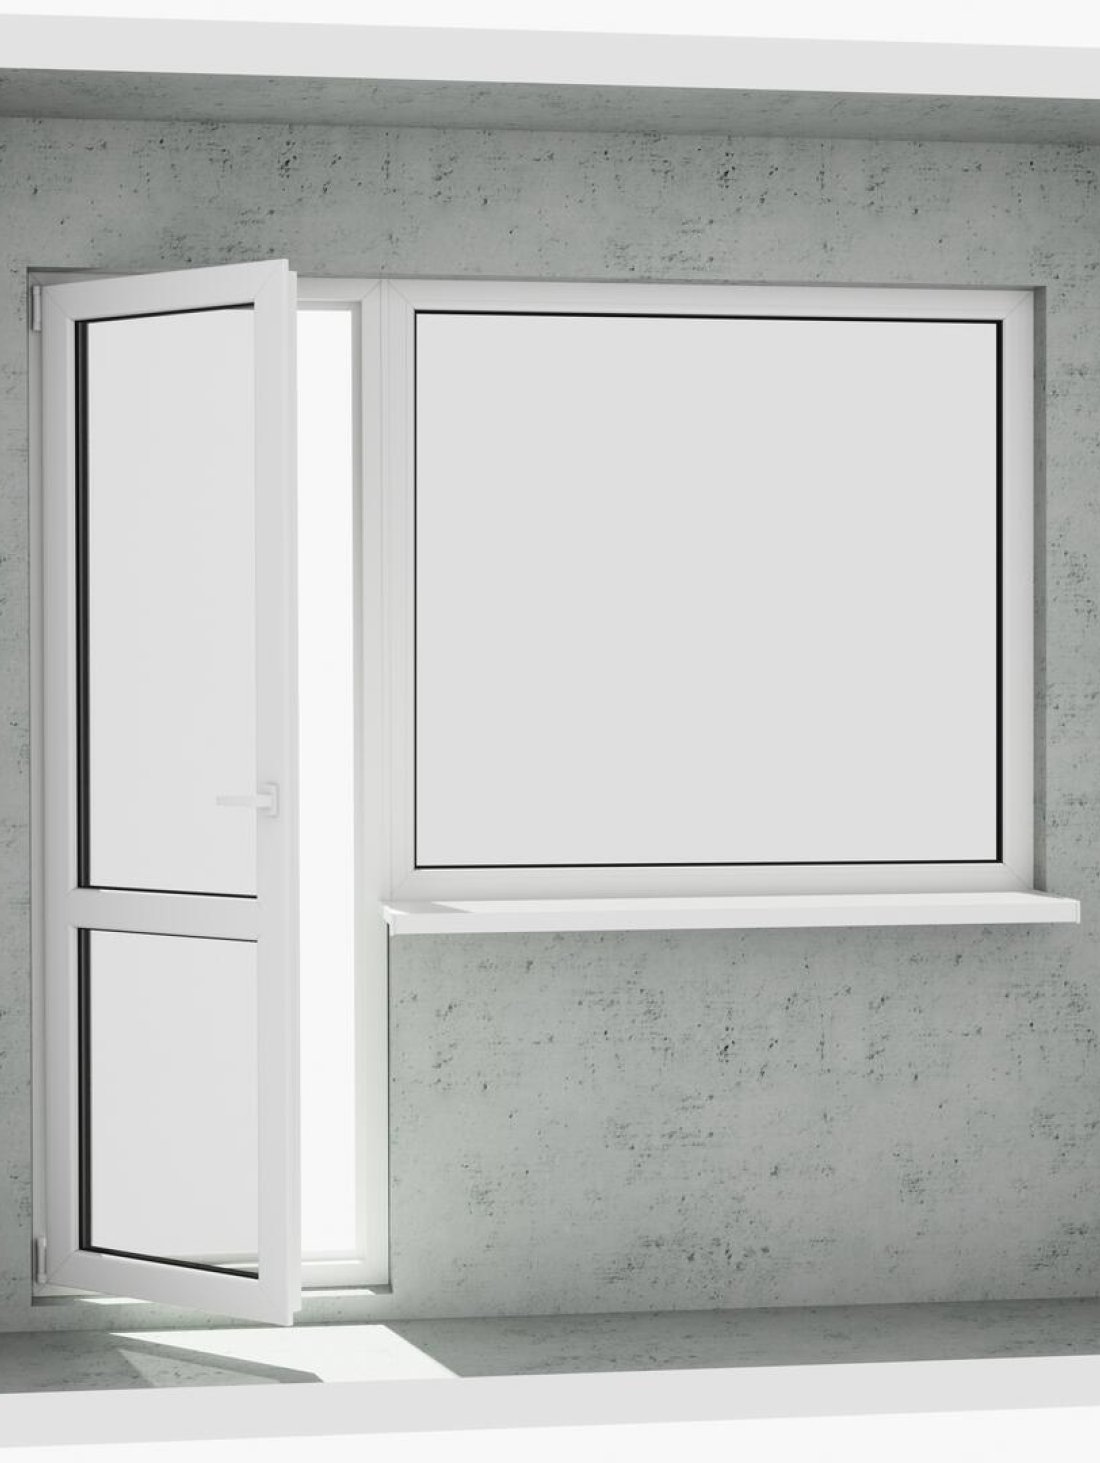 Вихід на лоджію (балкон): класичний білий металопластиковий балконний блок (в двері є режим провітрювання, вікно не відкривається) - Купити